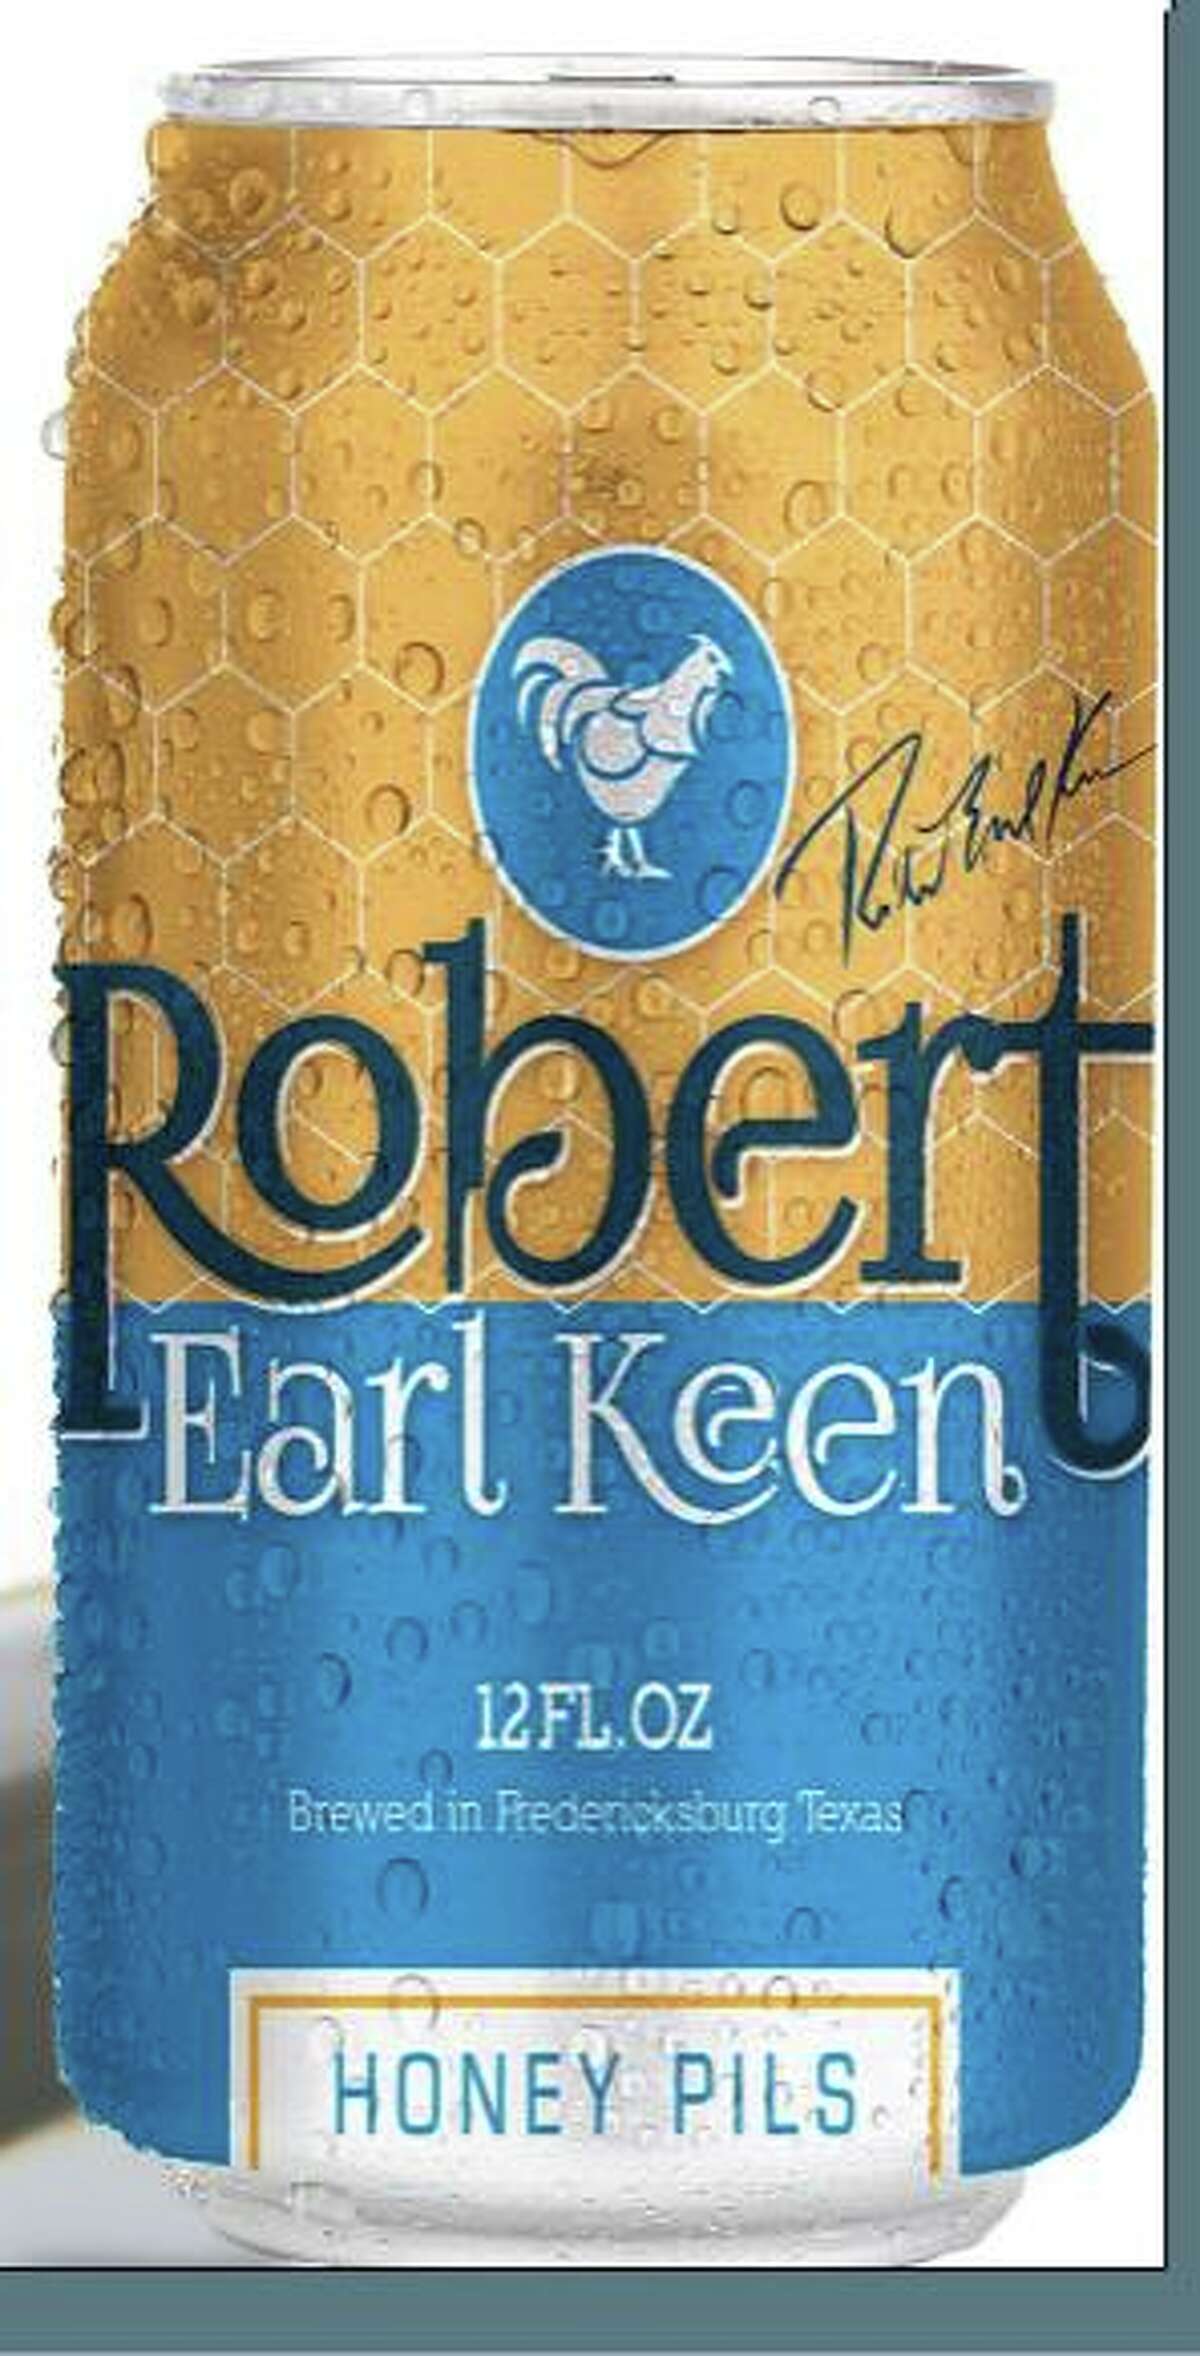 Robert Earl Keen Honey Pils will be released October 15, 2014.